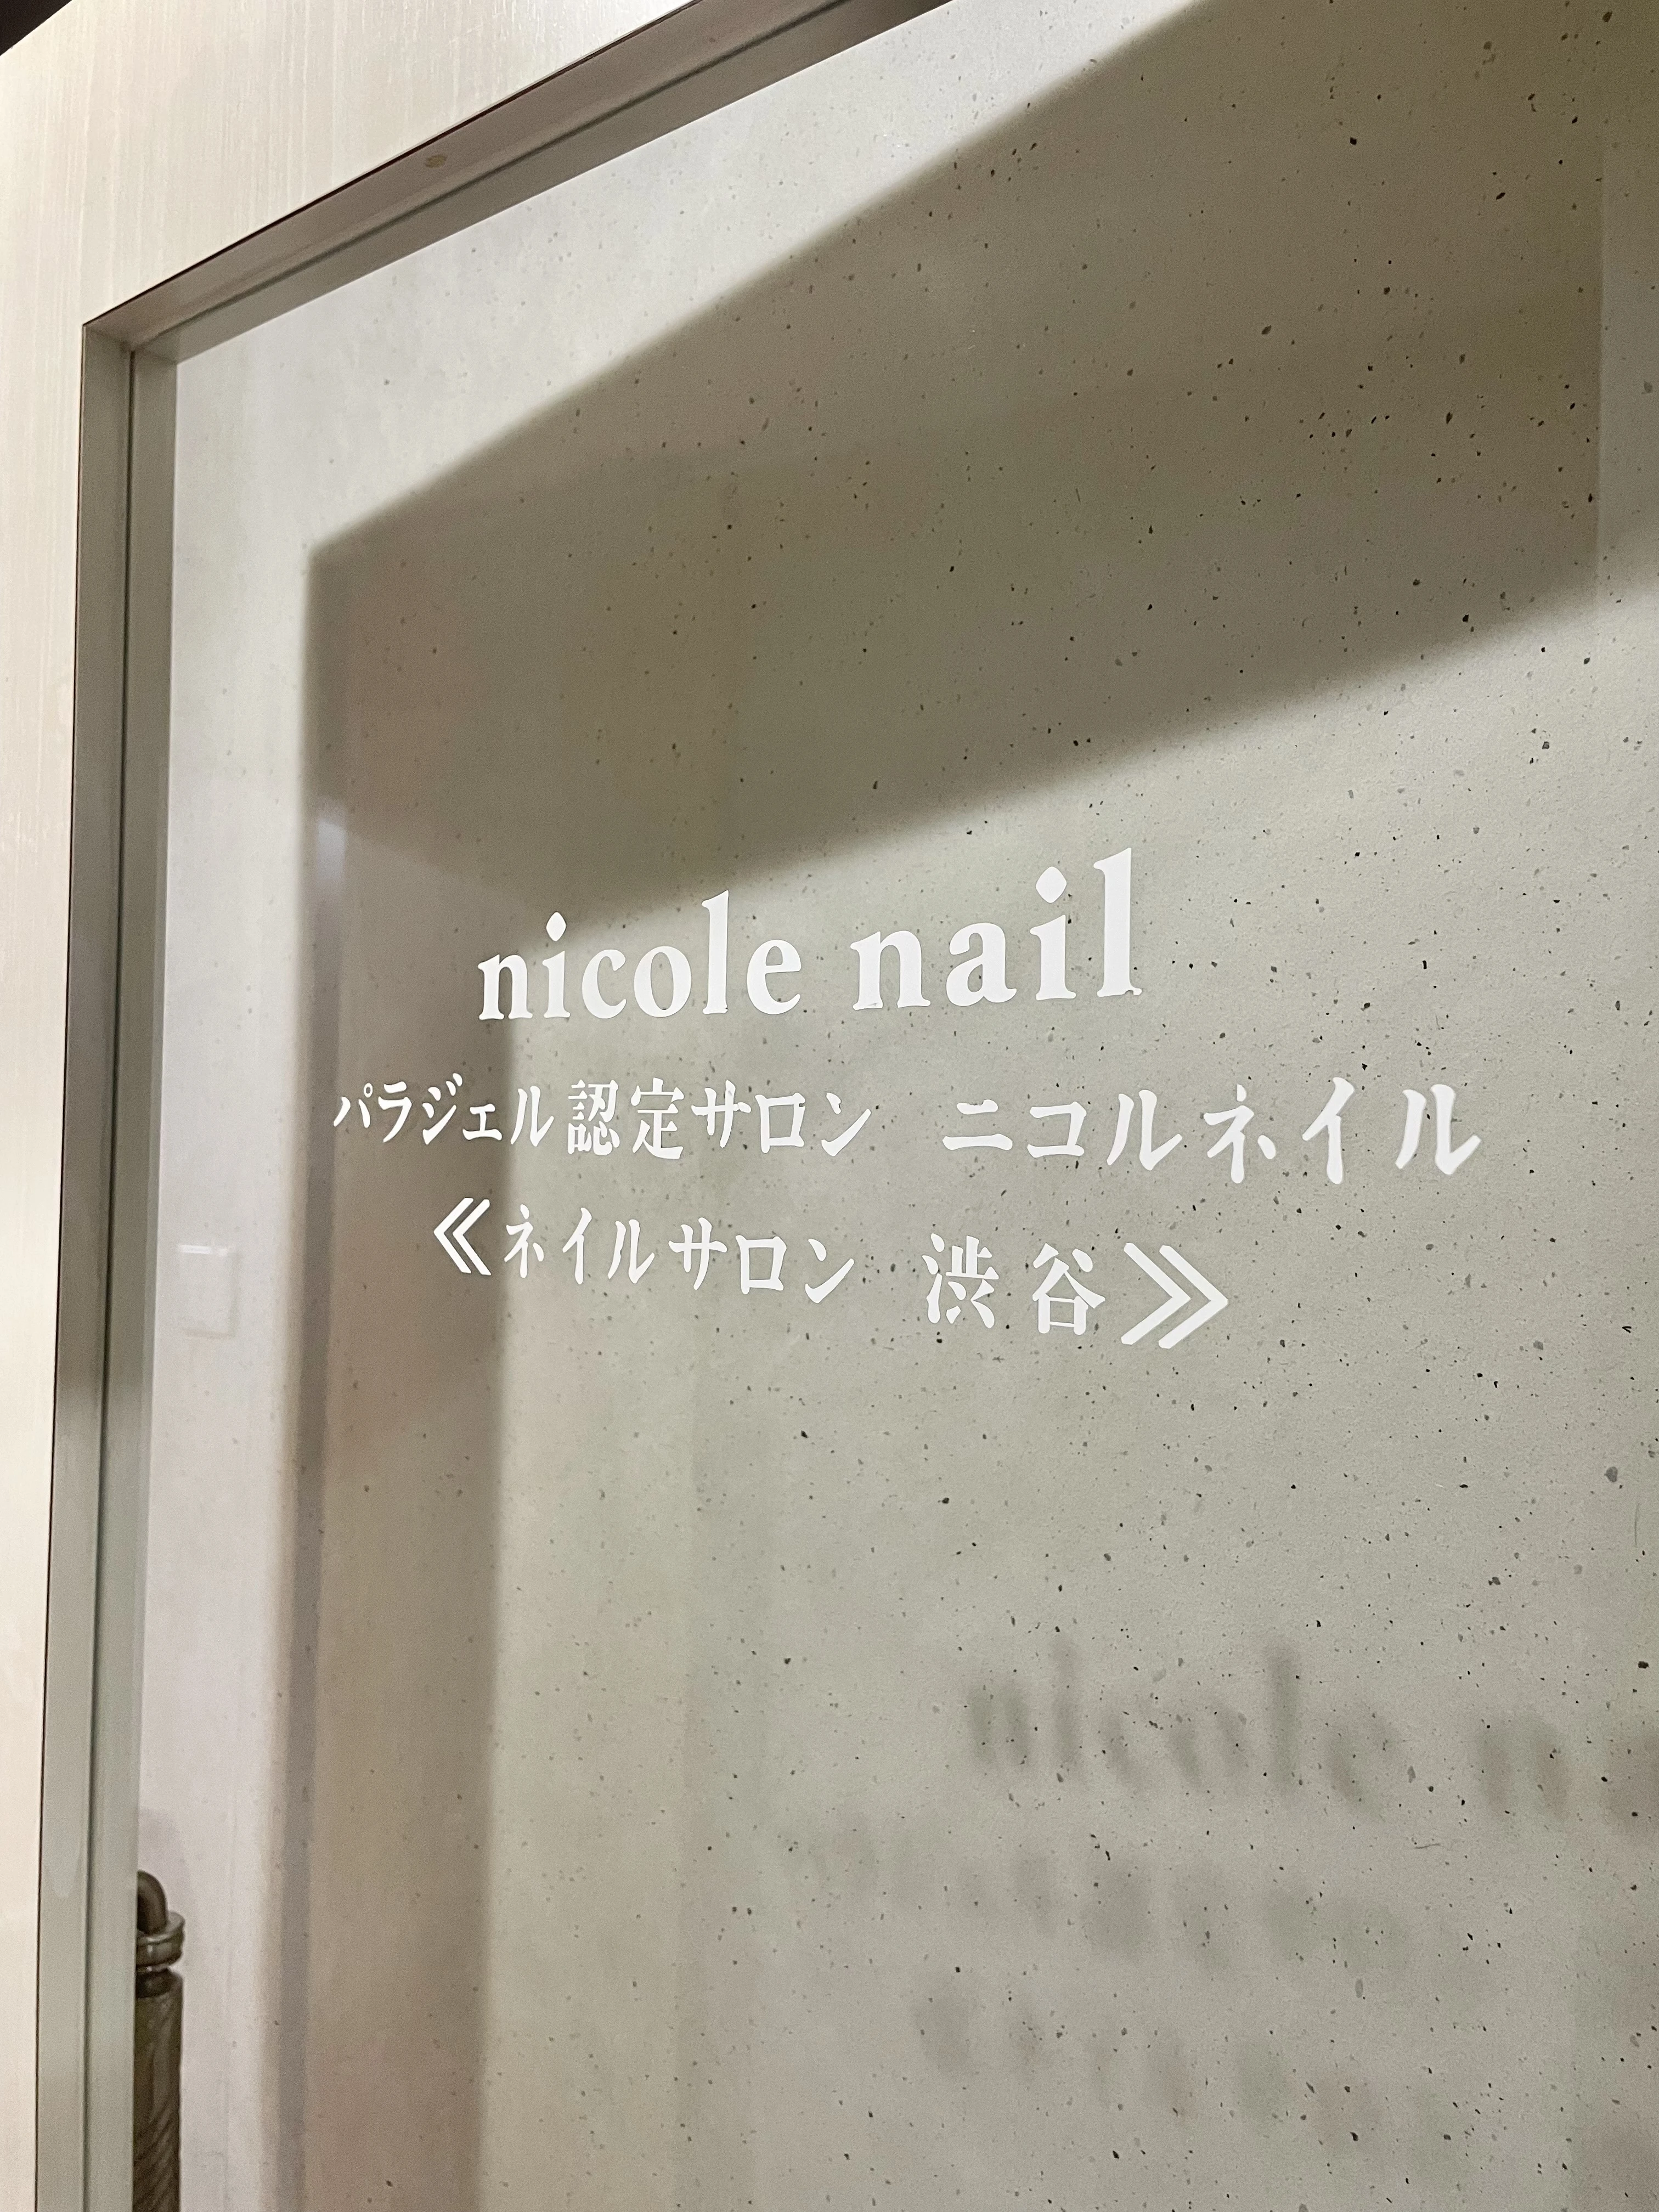 nicole nail 入口ドア